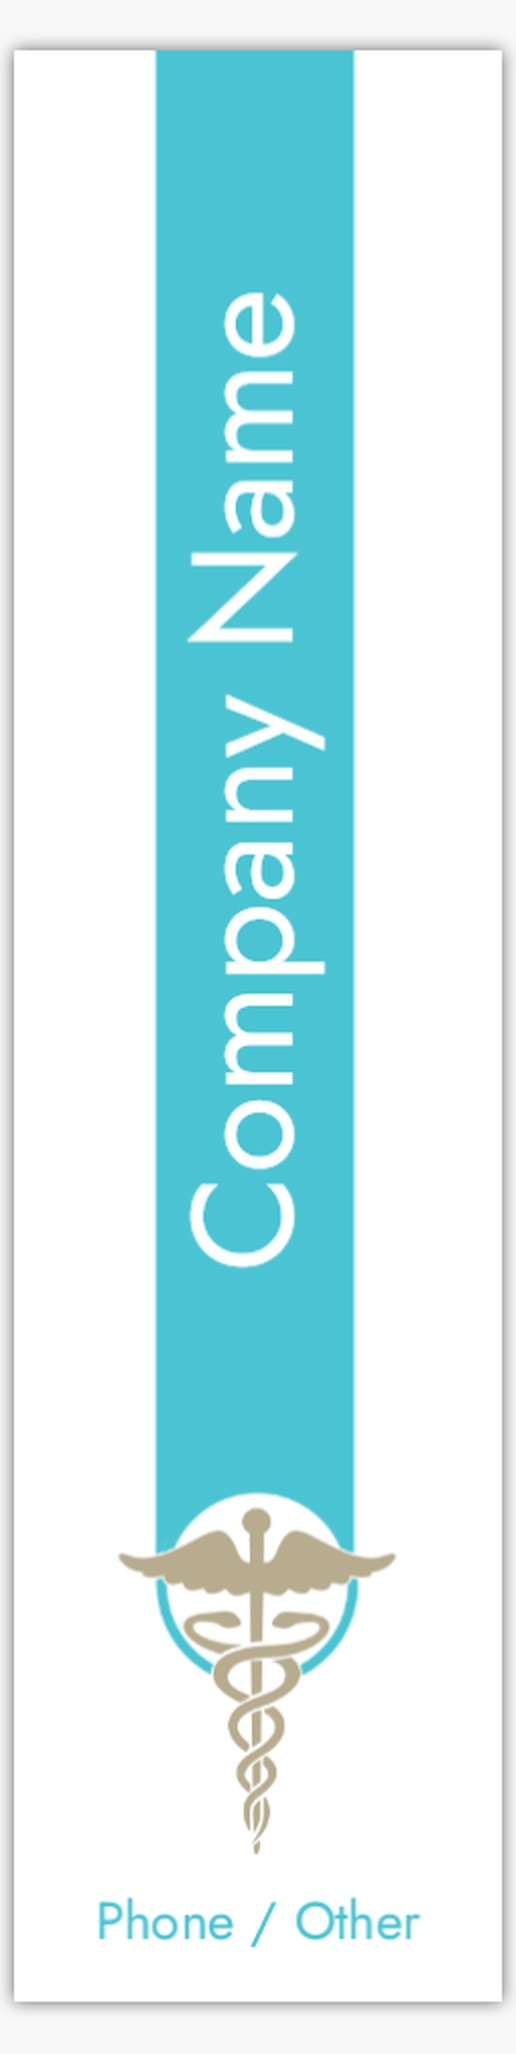 A logo médical marchio medico blue gray design